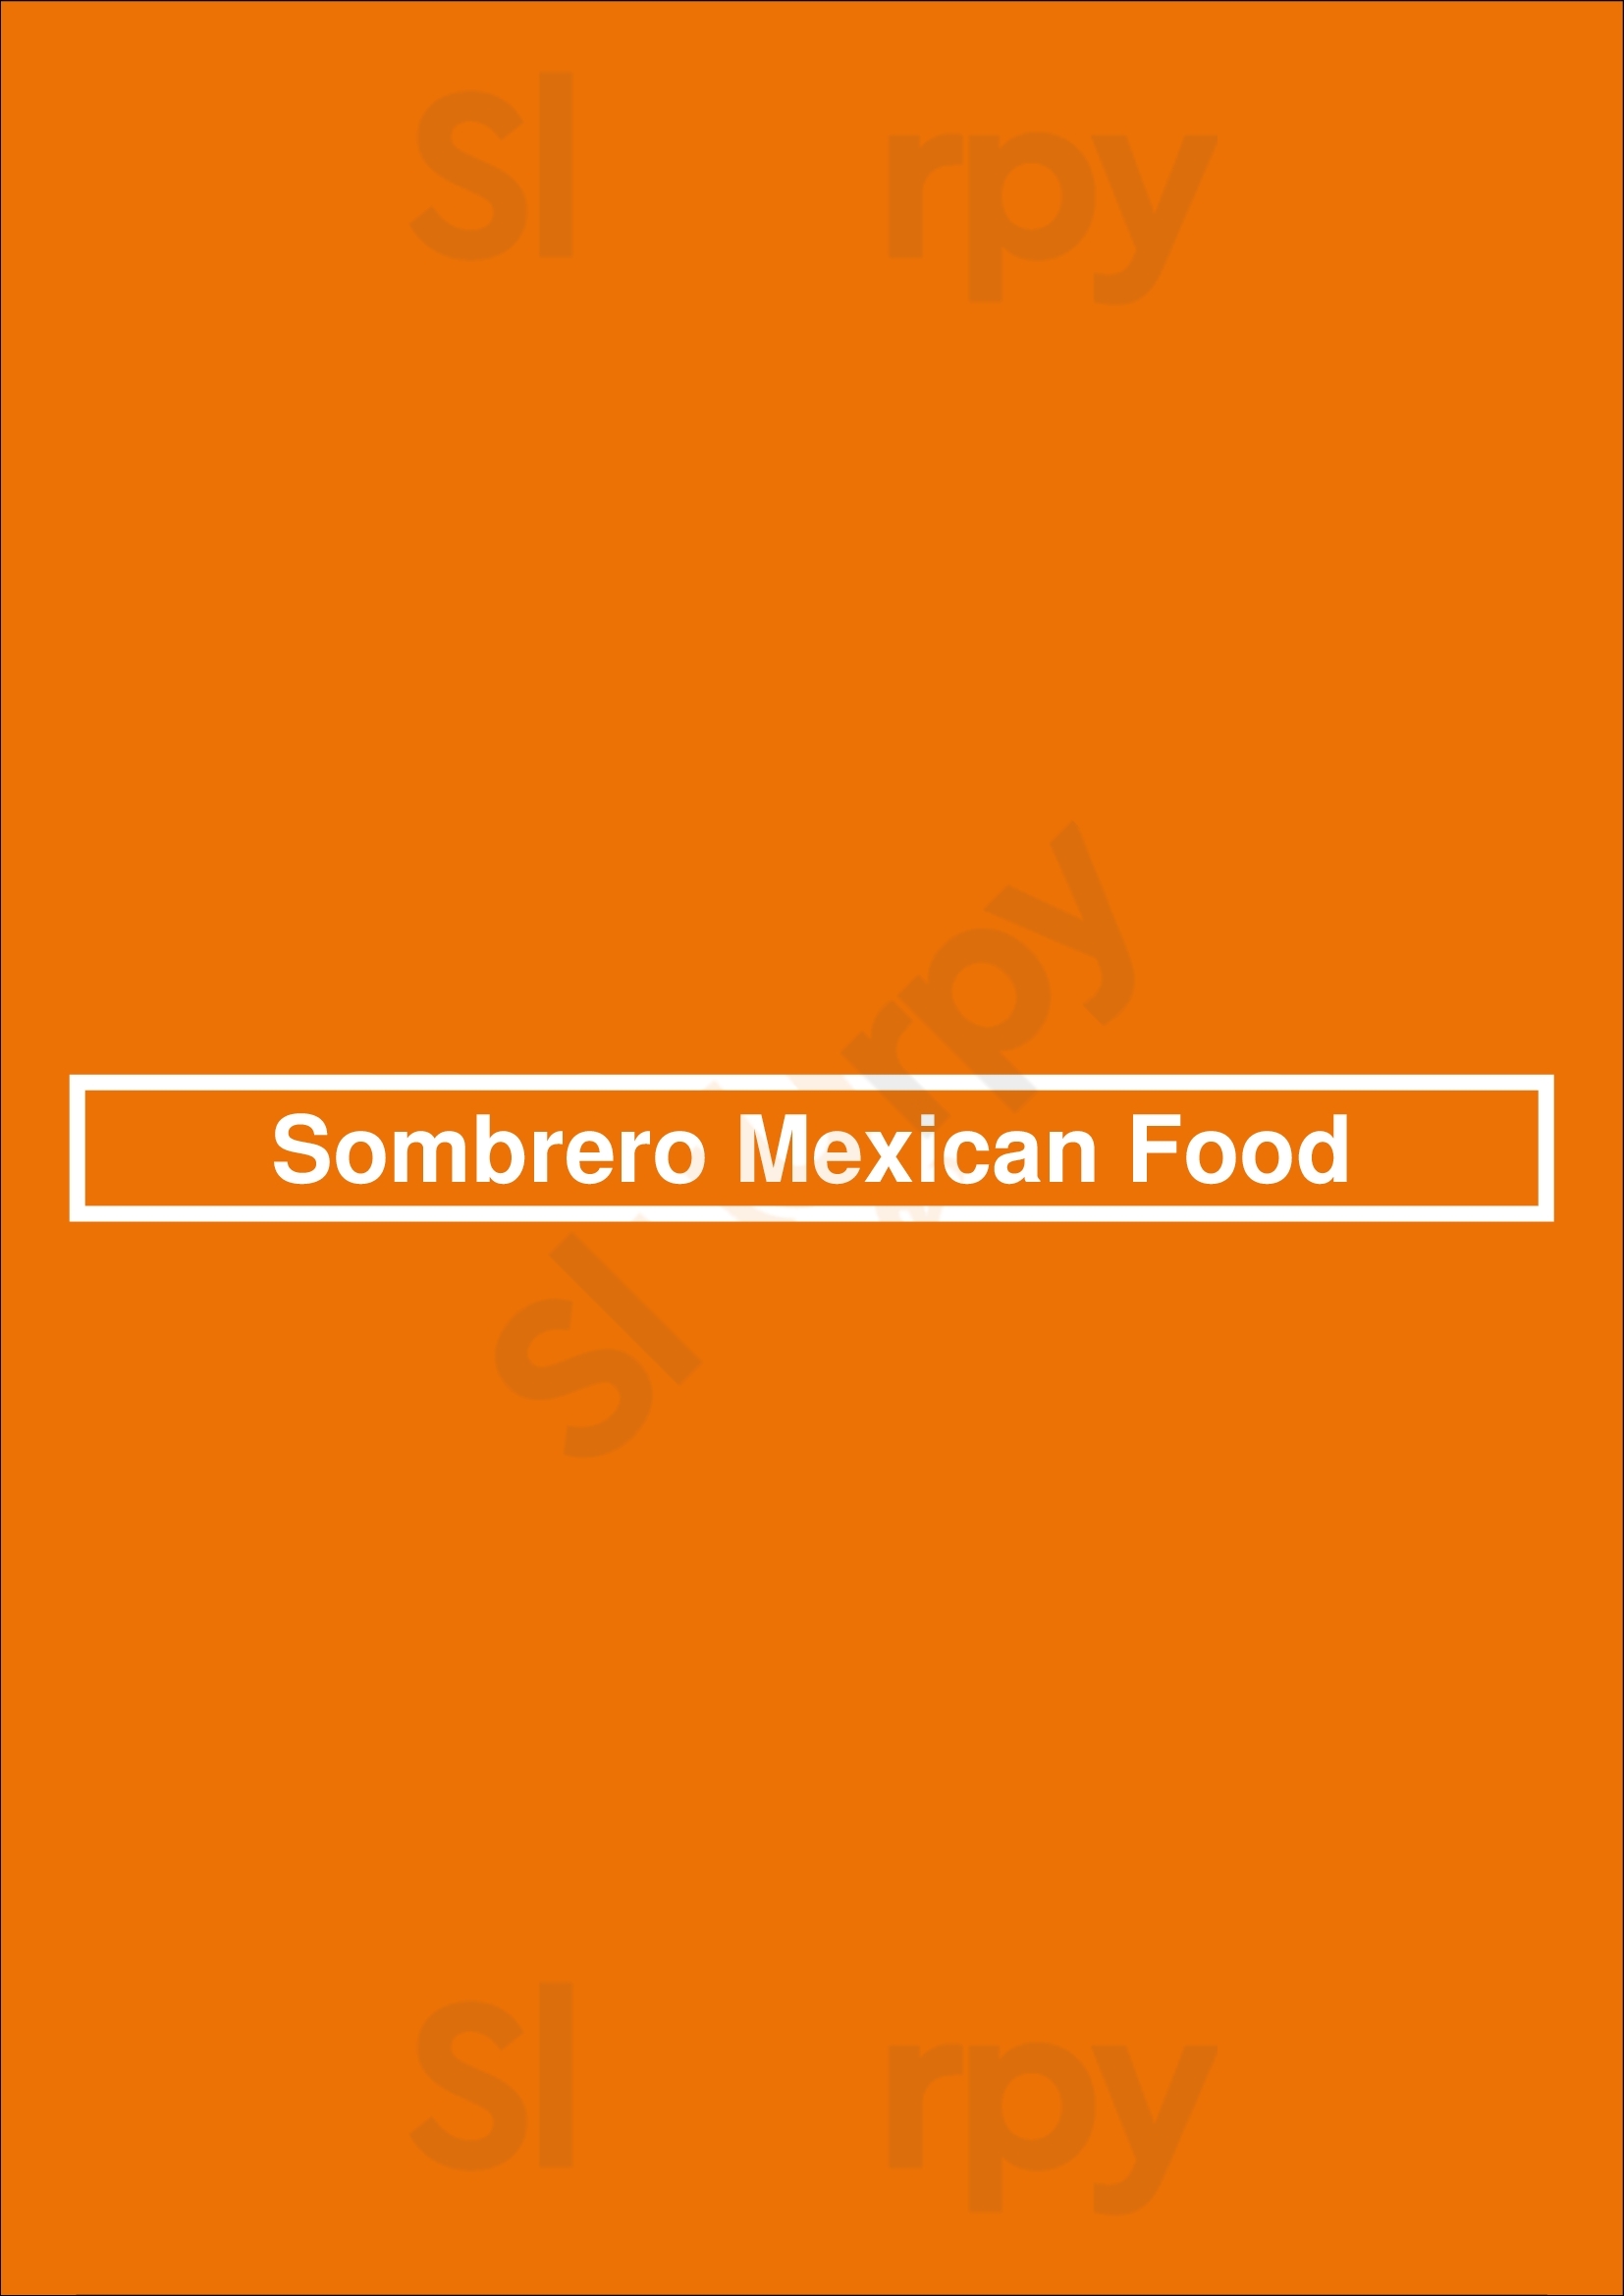 Sombrero Mexican Food San Diego Menu - 1